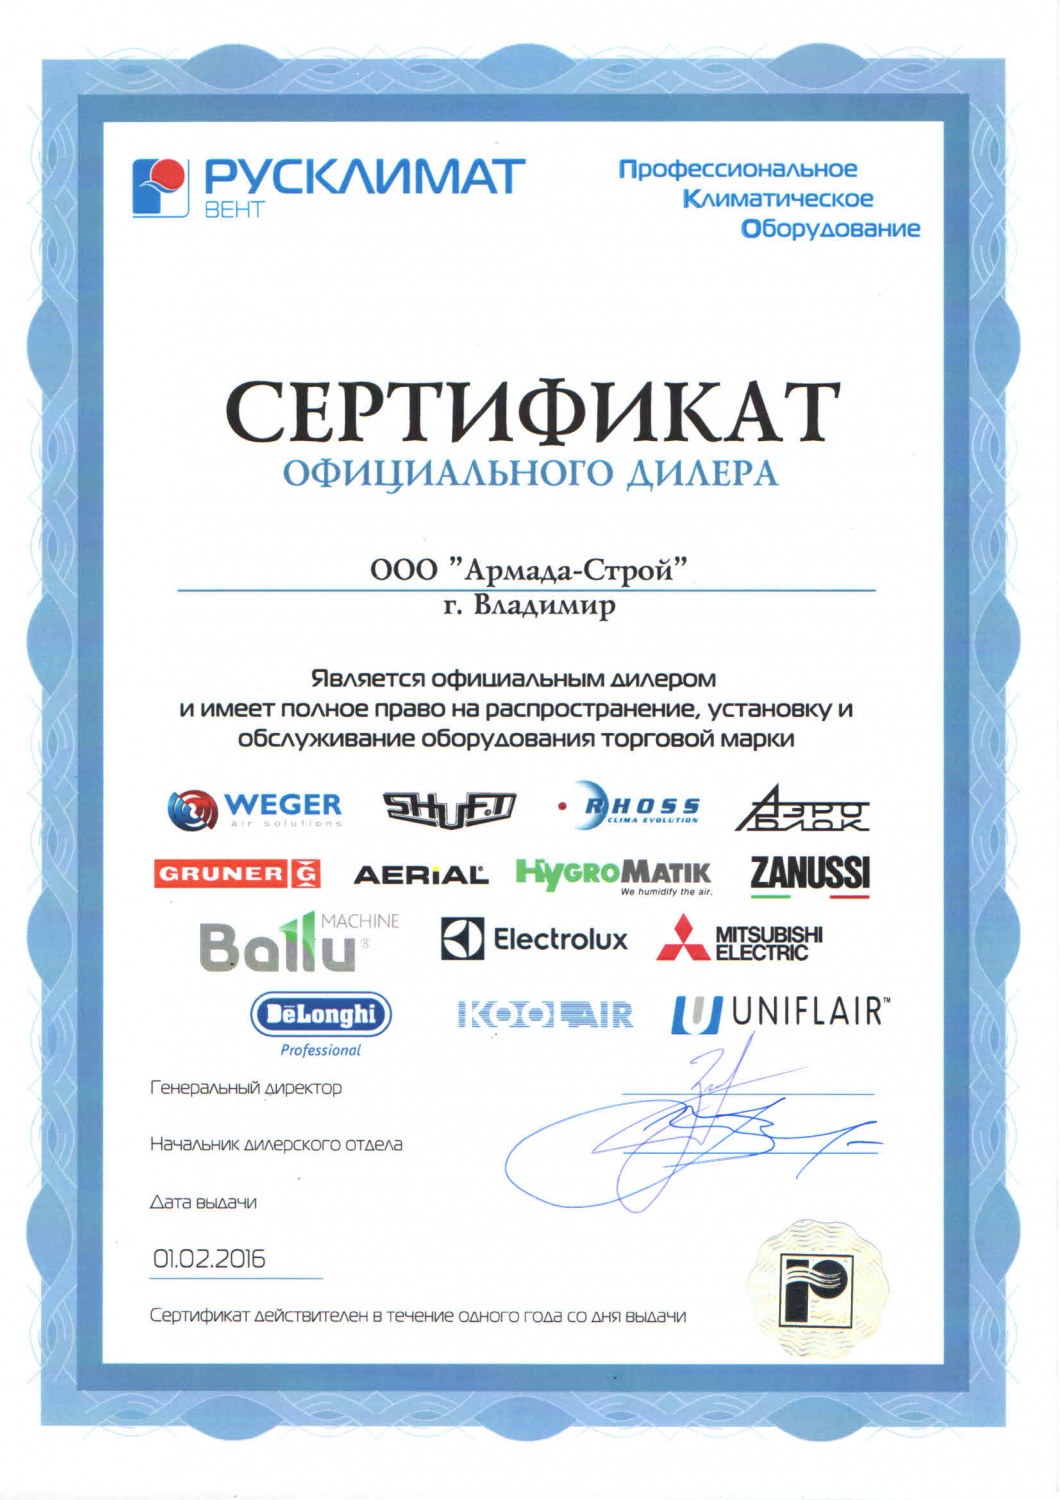 Русклимат сертификат официального дилера